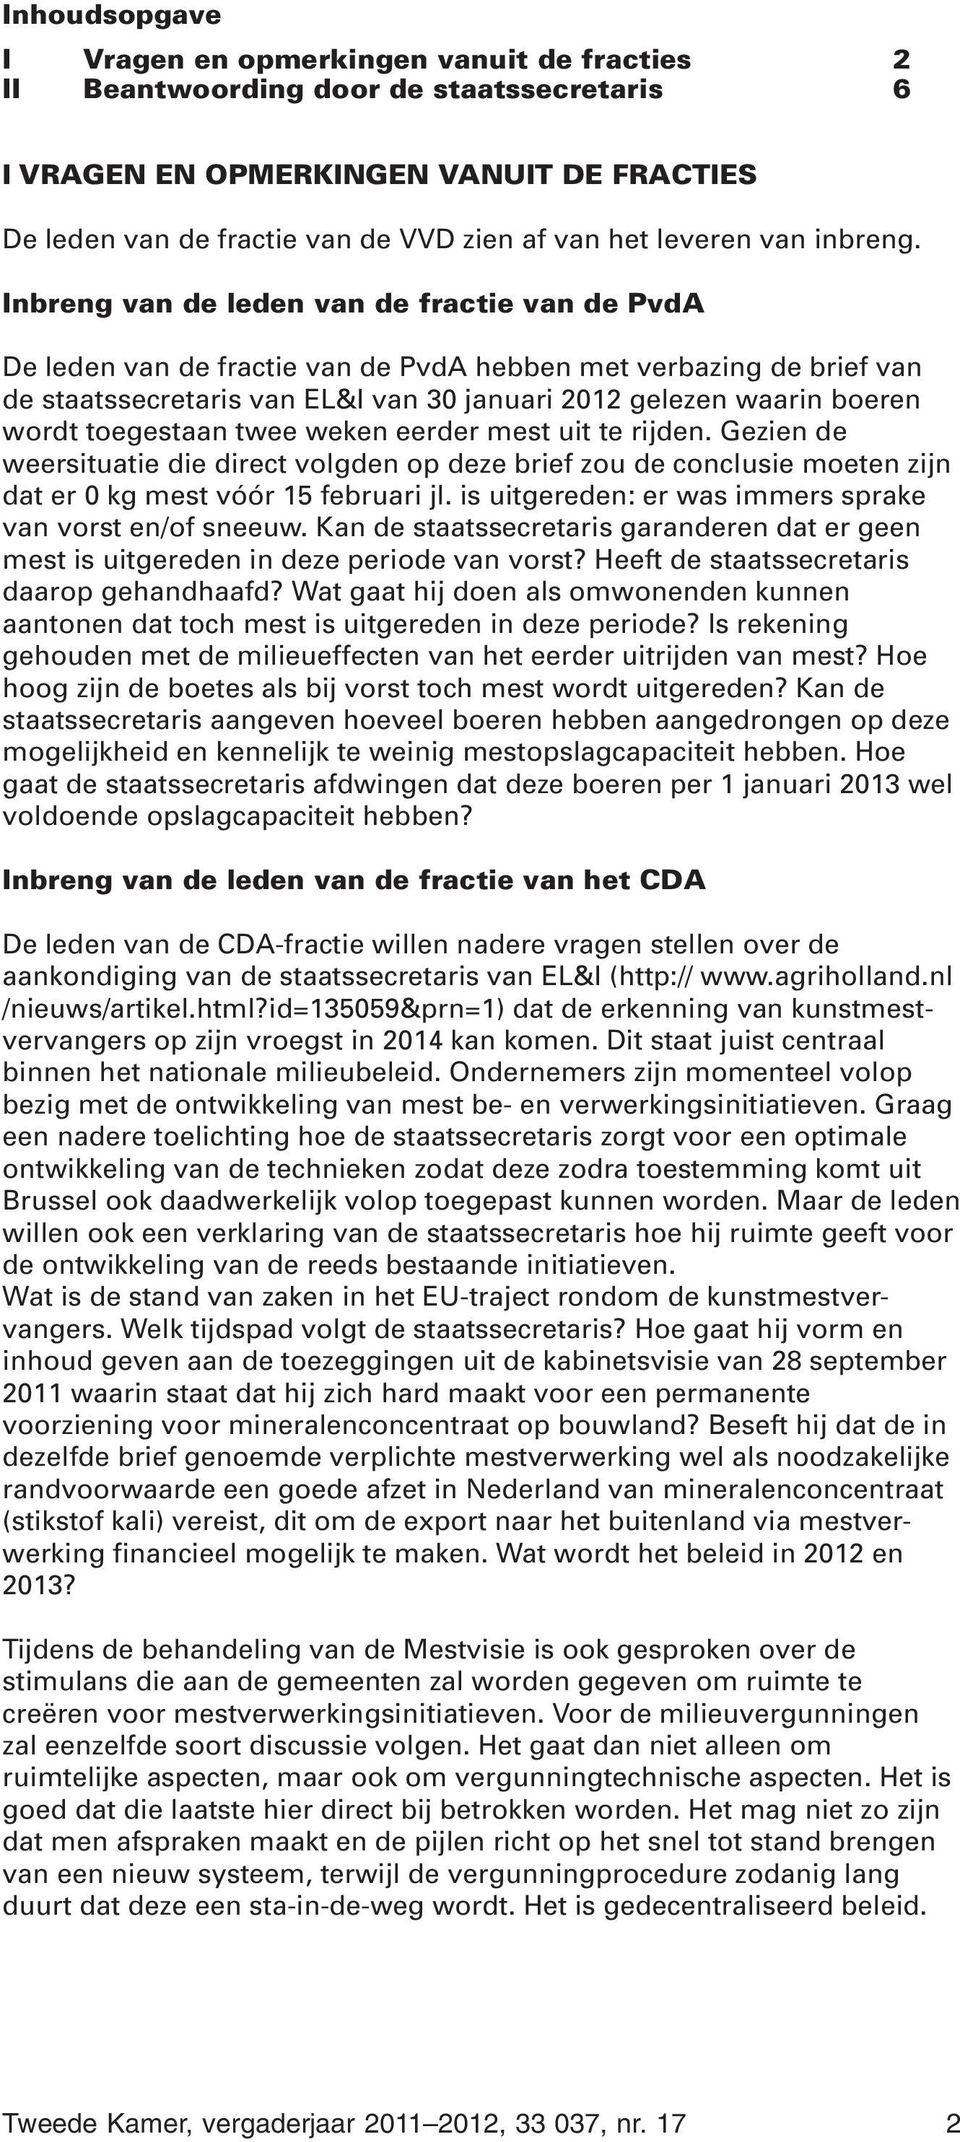 Inbreng van de leden van de fractie van de PvdA De leden van de fractie van de PvdA hebben met verbazing de brief van de staatssecretaris van EL&I van 30 januari 2012 gelezen waarin boeren wordt